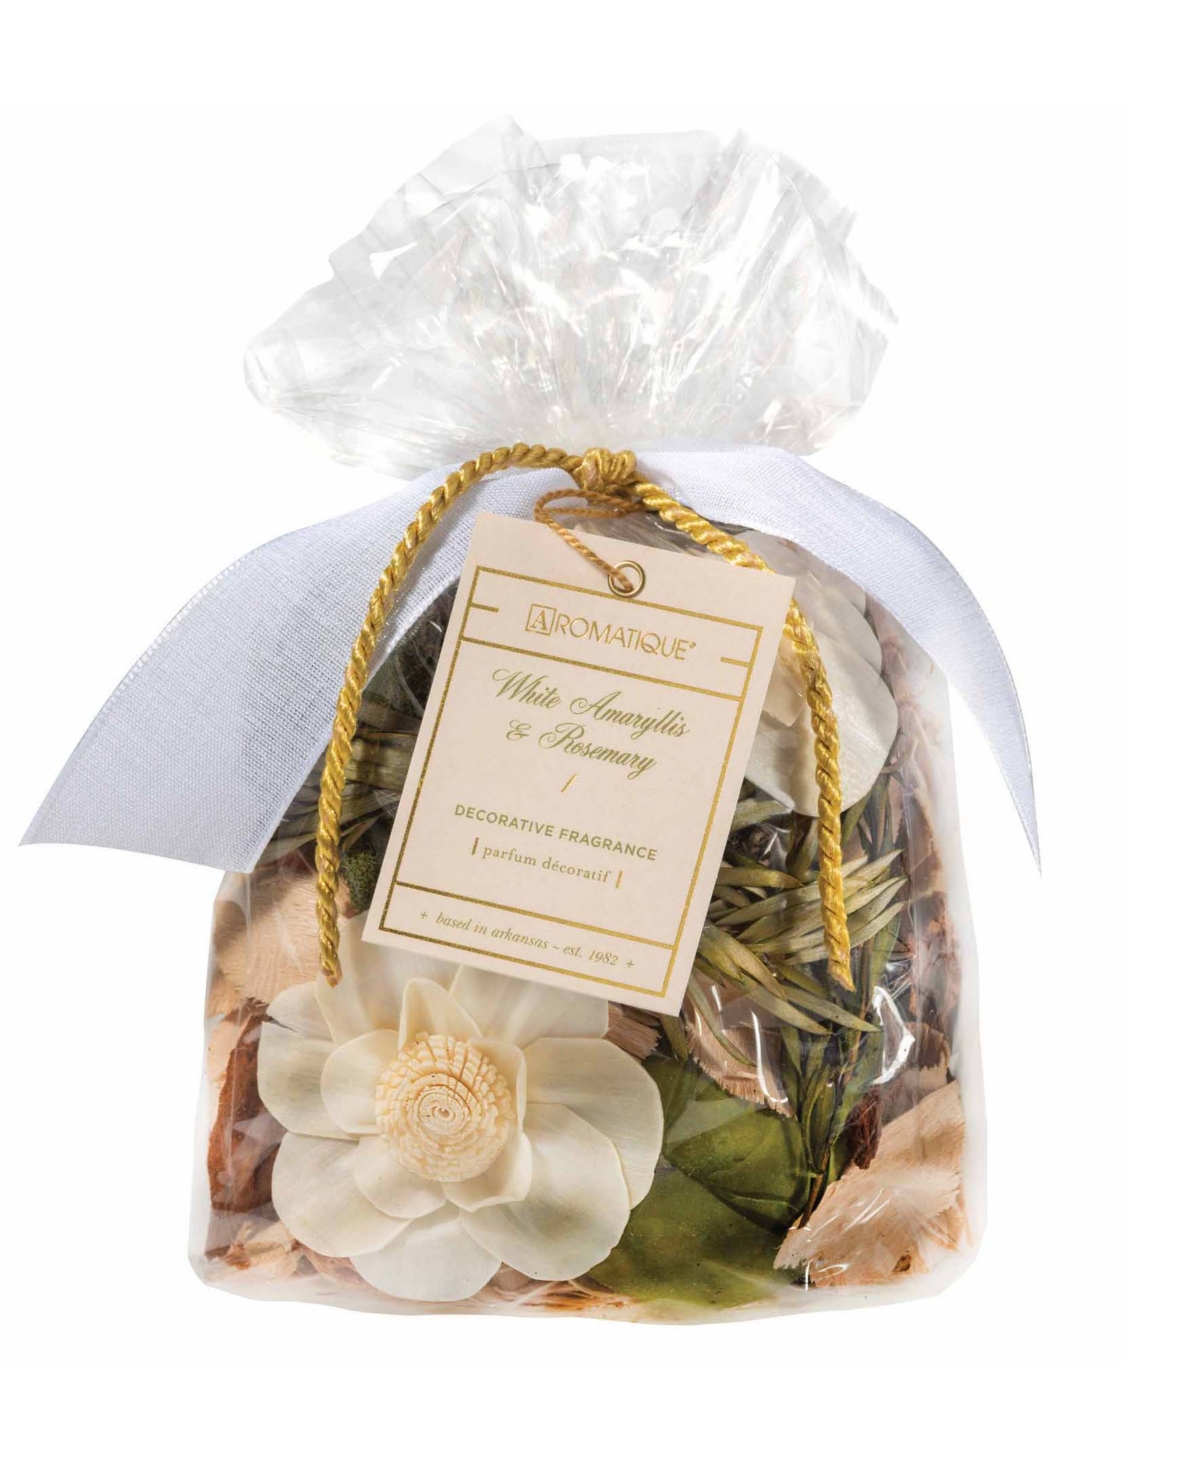 Aromatique White Amaryllis and Rosemary Decorative Fragrance Bag